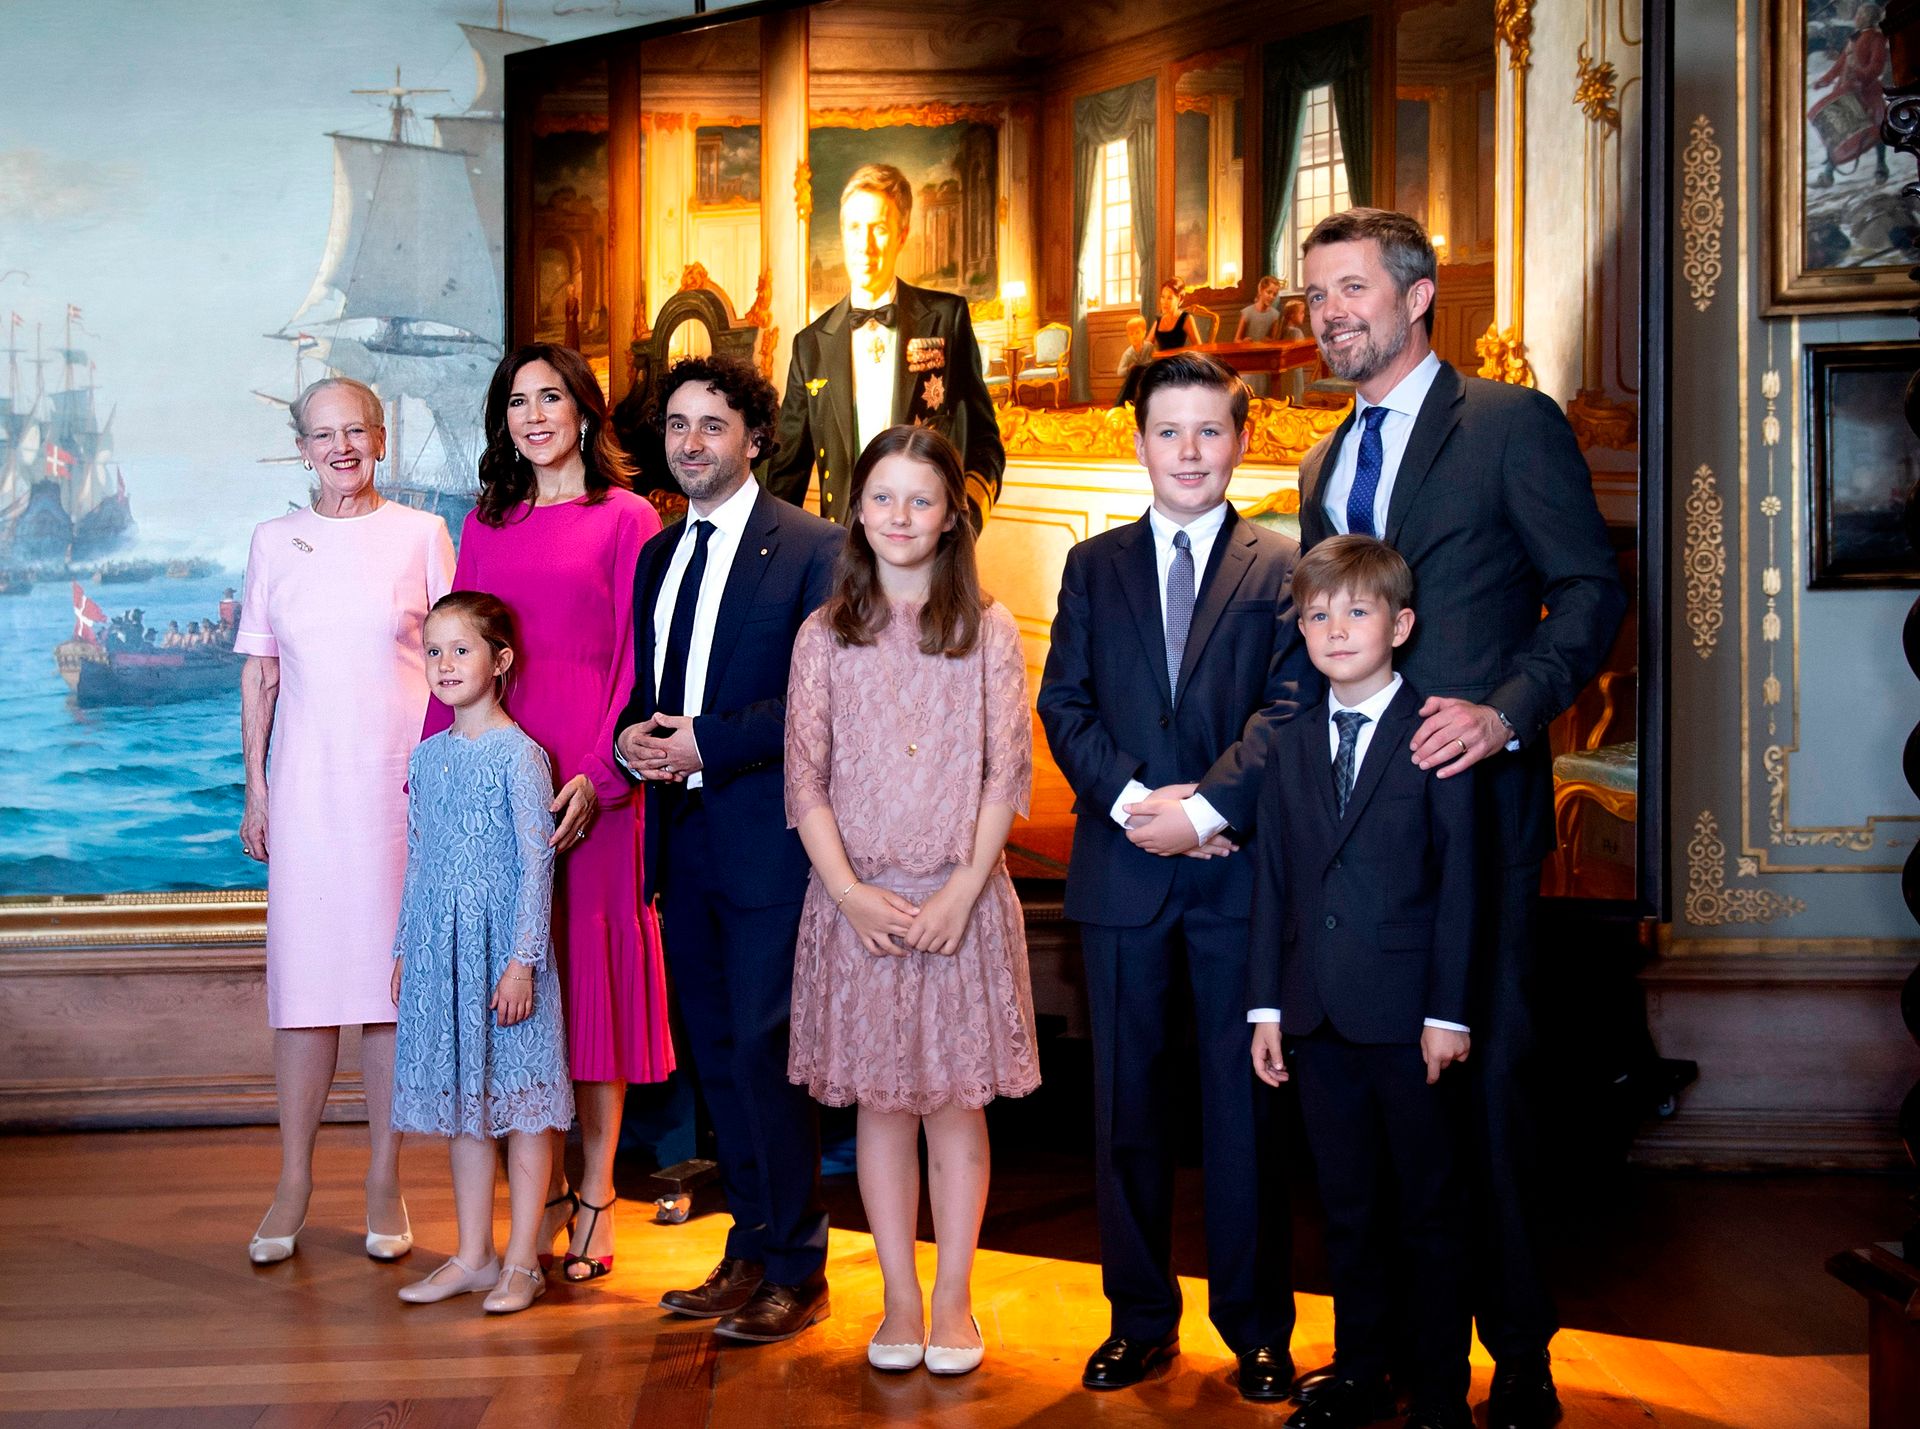 Kroonprins Frederik heeft samen met zijn vrouw en kinderen, een nieuw portret van zichzelf onthuld.